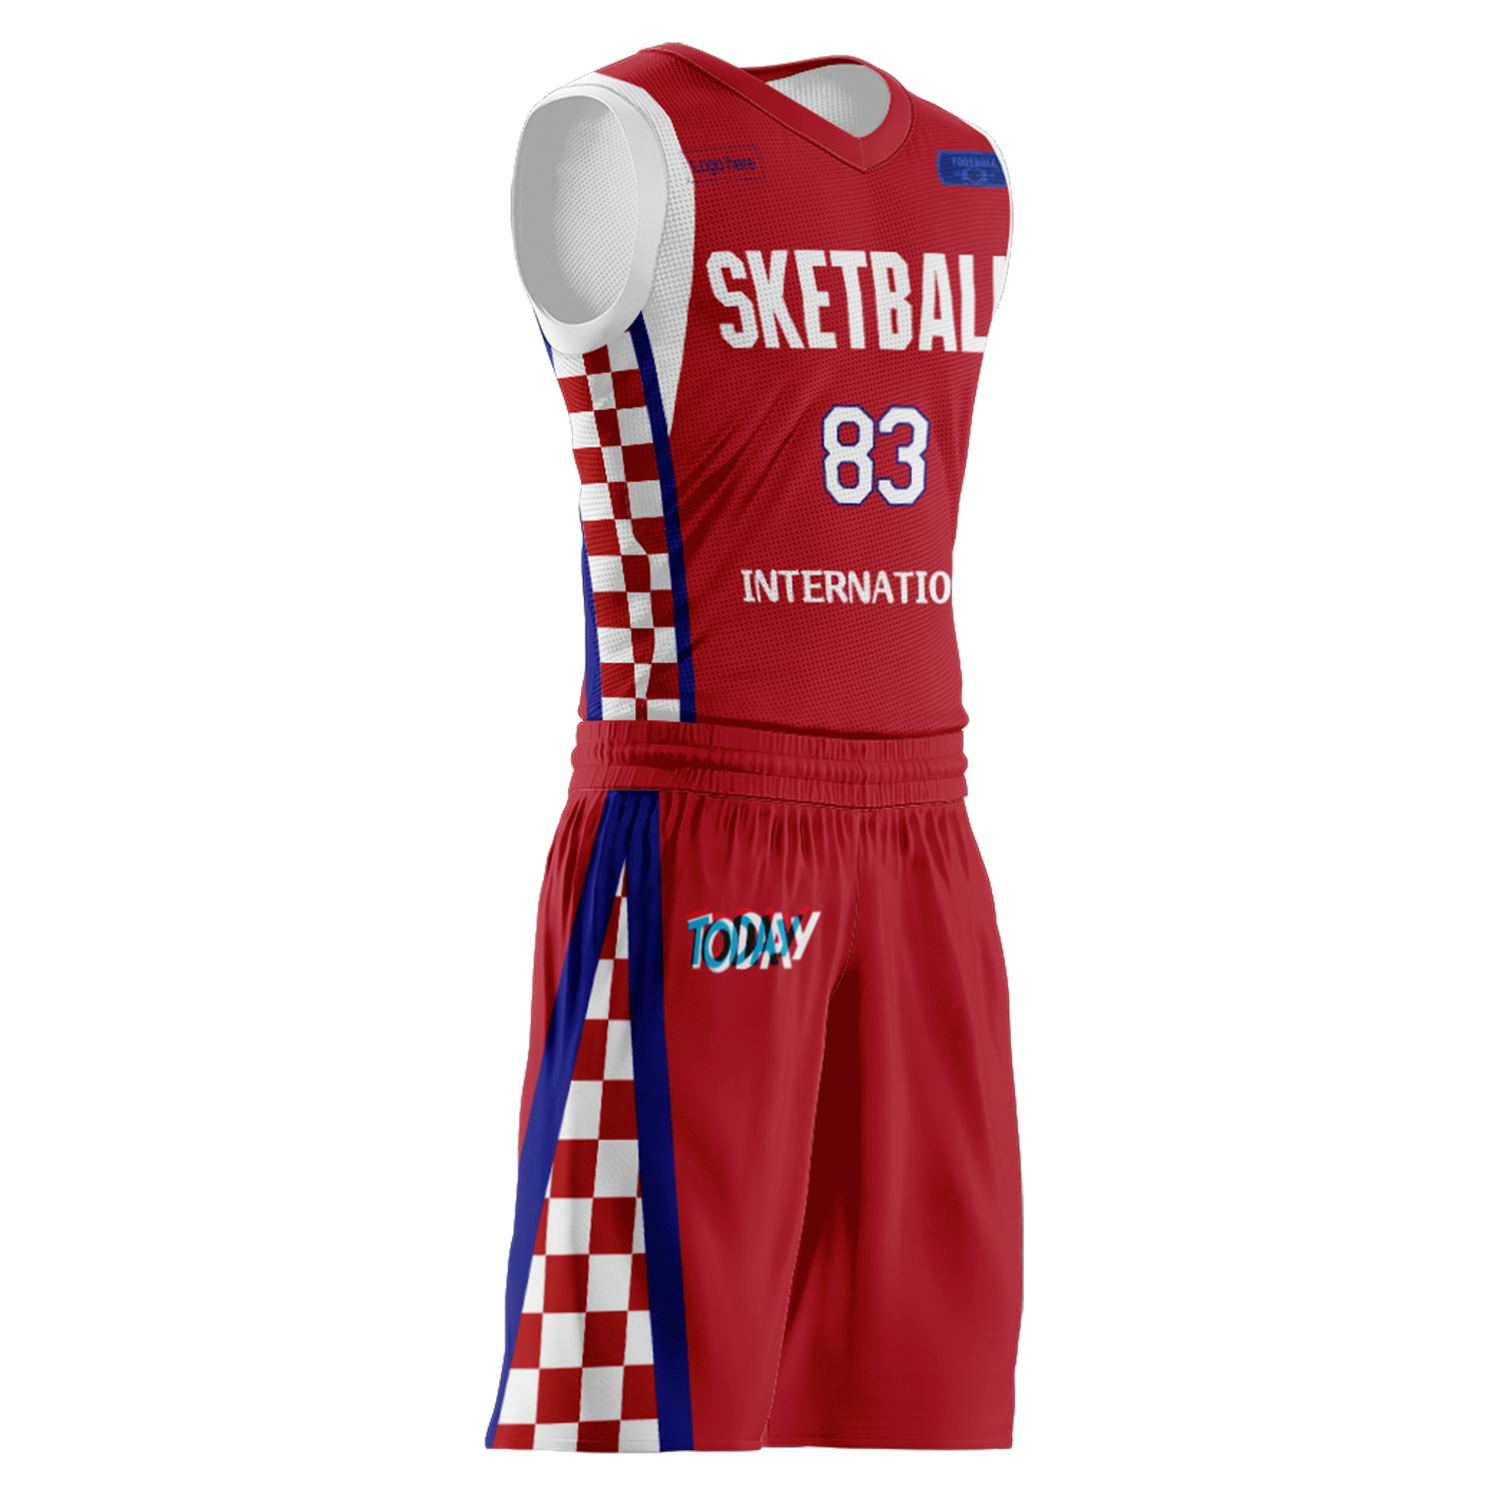 Kundenspezifische Kroatien-Team-Basketballanzüge